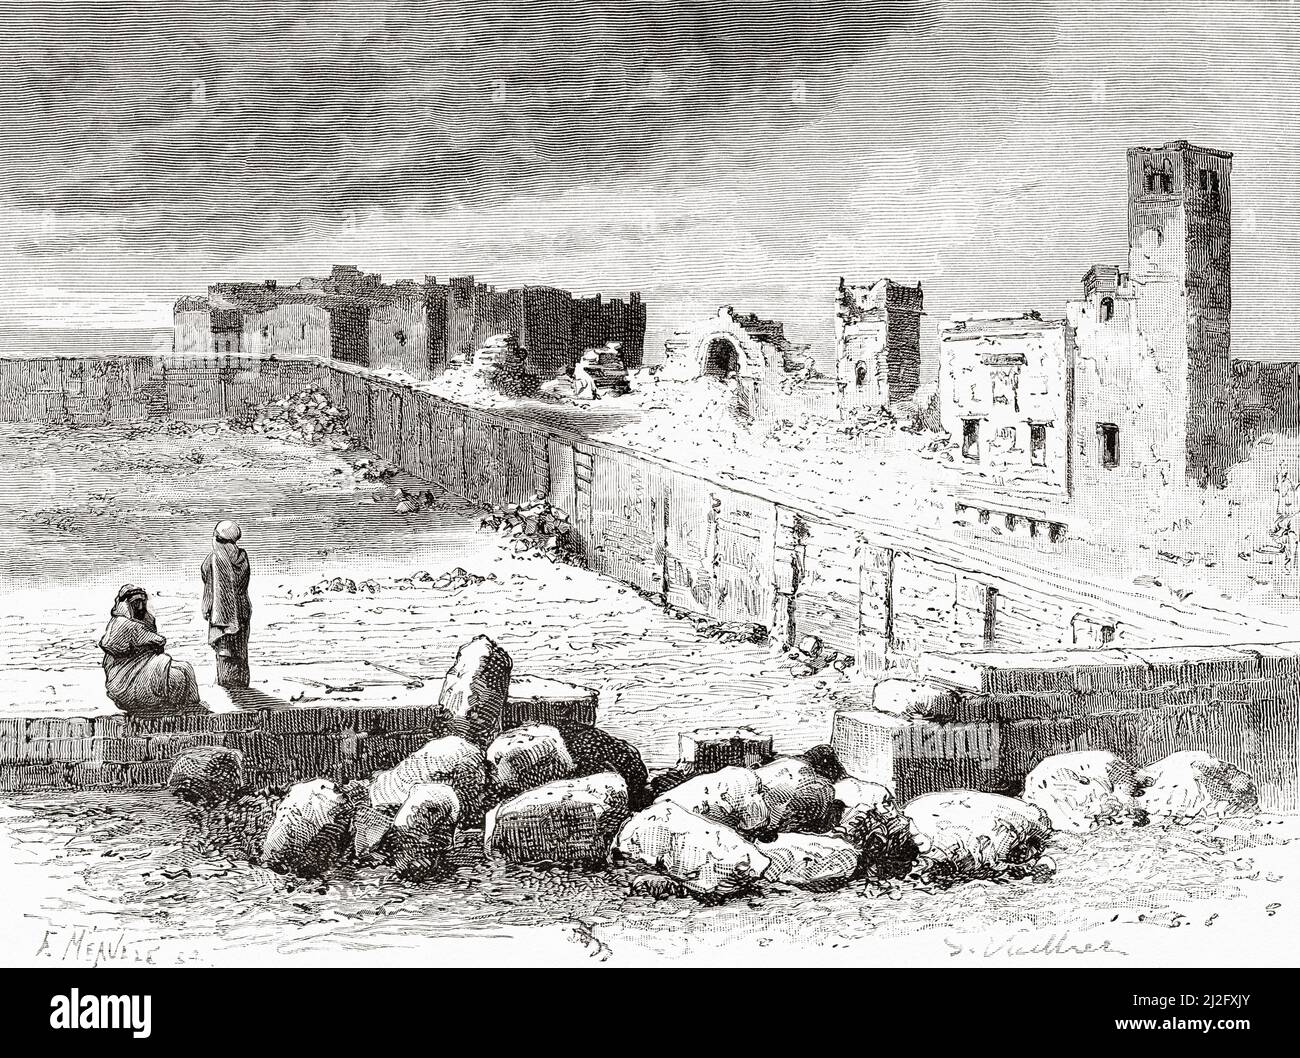 Ruinas de Bosra. Busra al-Sham es una ciudad en el sur de Siria, distrito de Daraa, región de Hauran, Siria. Peregrinación a Nedjed, cuna de la raza árabe por Lady Anna Blunt 1878-1879, Le Tour du Monde 1882 Foto de stock